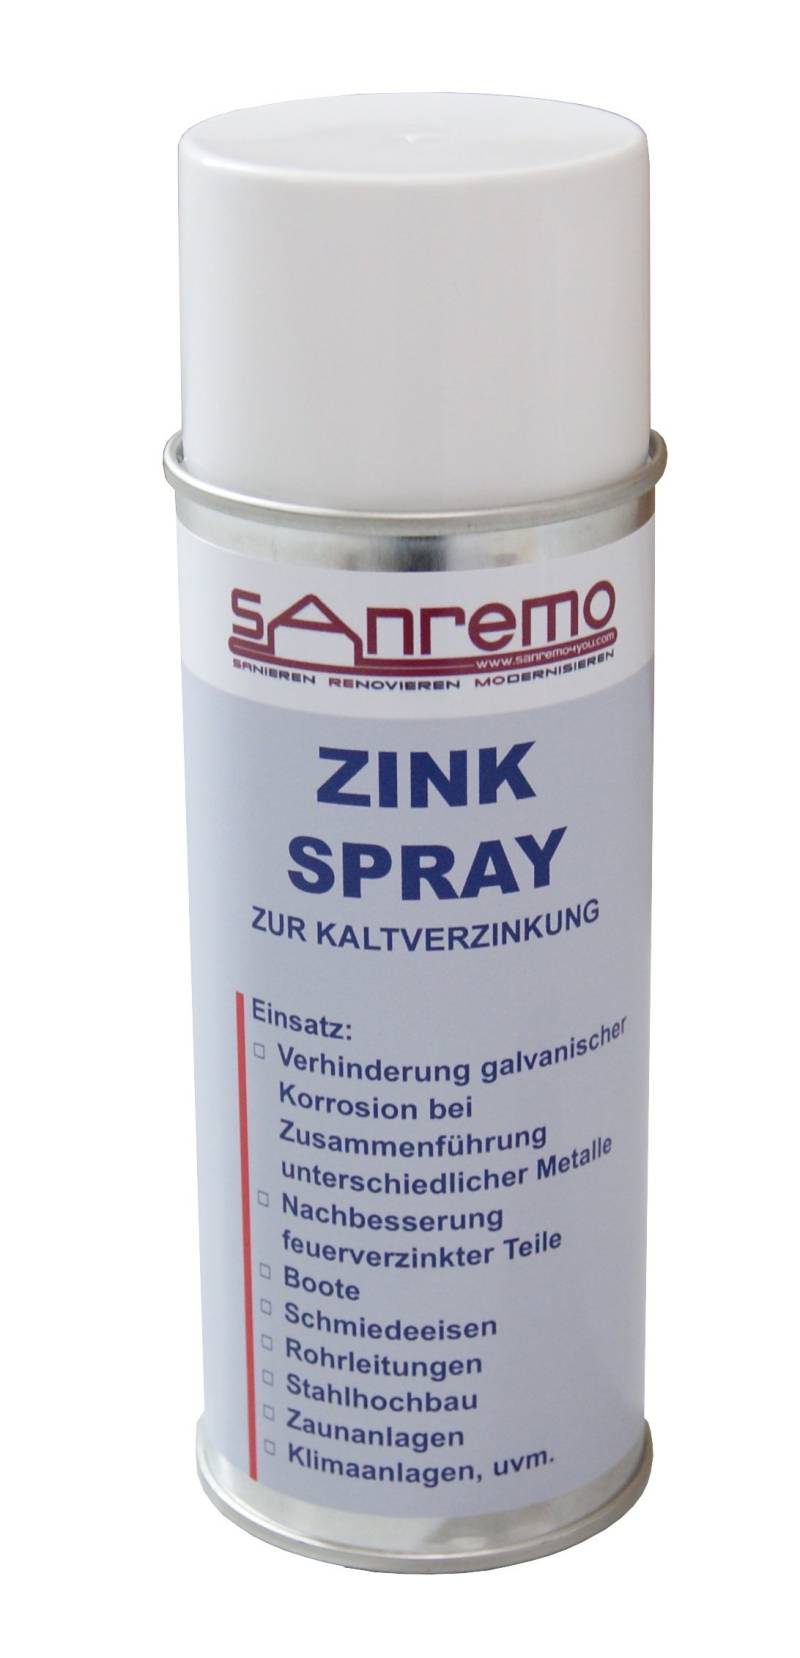 Sanremo 12x Zink Spray - zur Kaltbezinkung 400ml von Sanremo